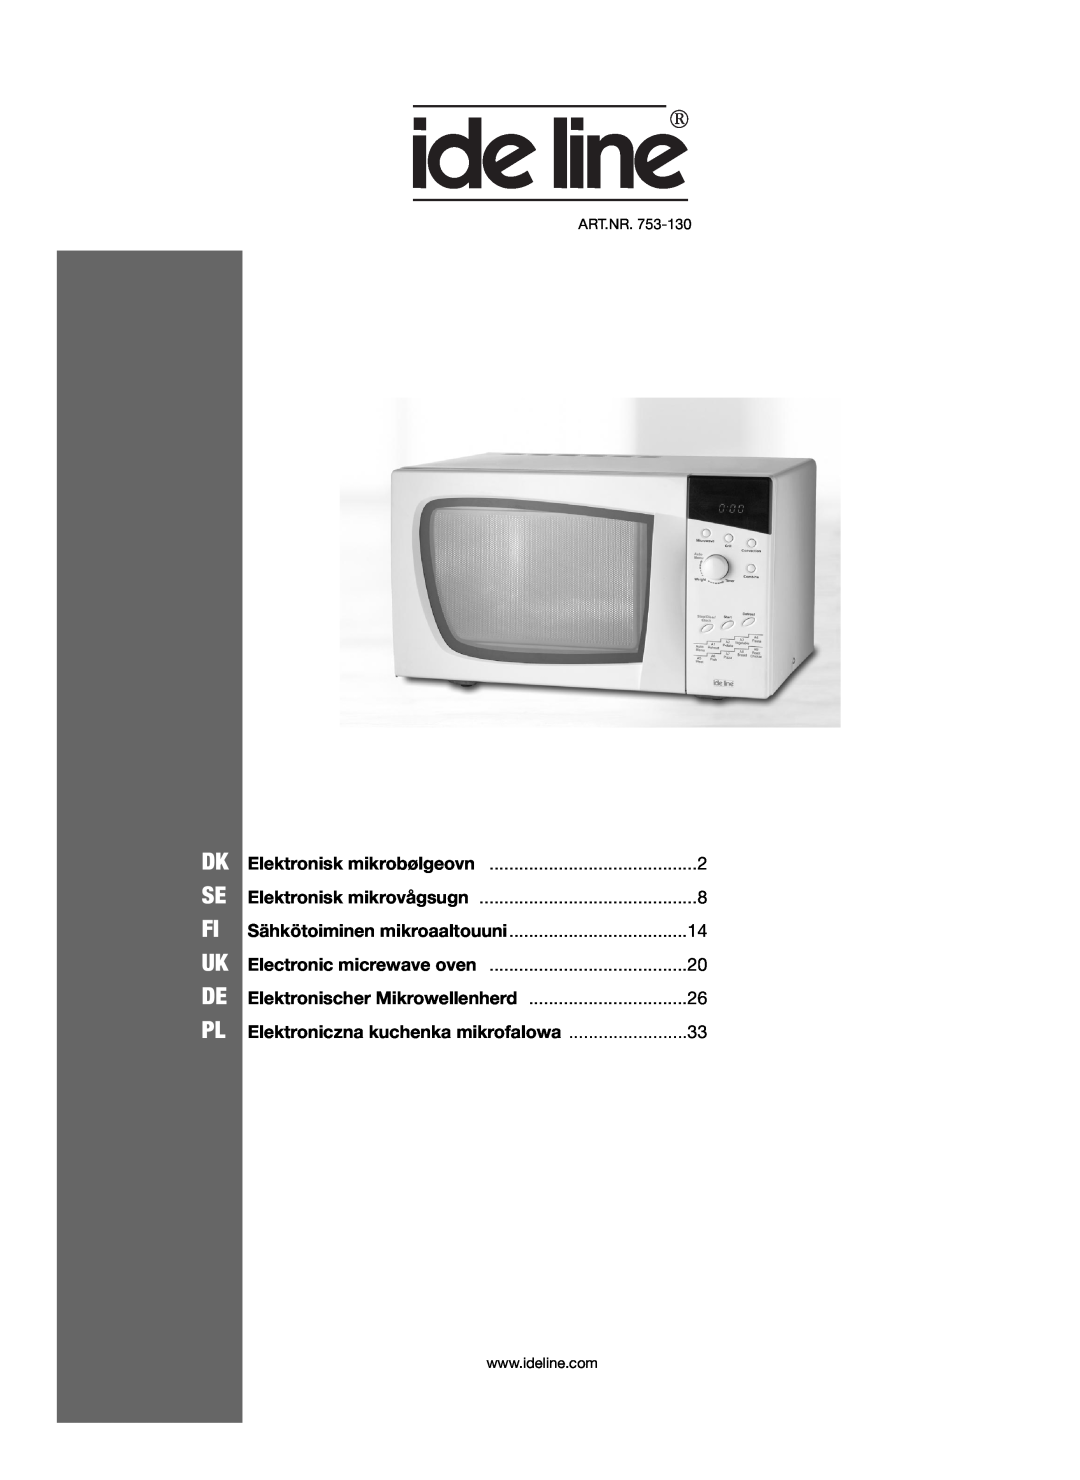 Melissa 753-130 manual Elektronisk mikrovågsugn, Dk Se Fi Uk De Pl, Sähkötoiminen mikroaaltouuni 